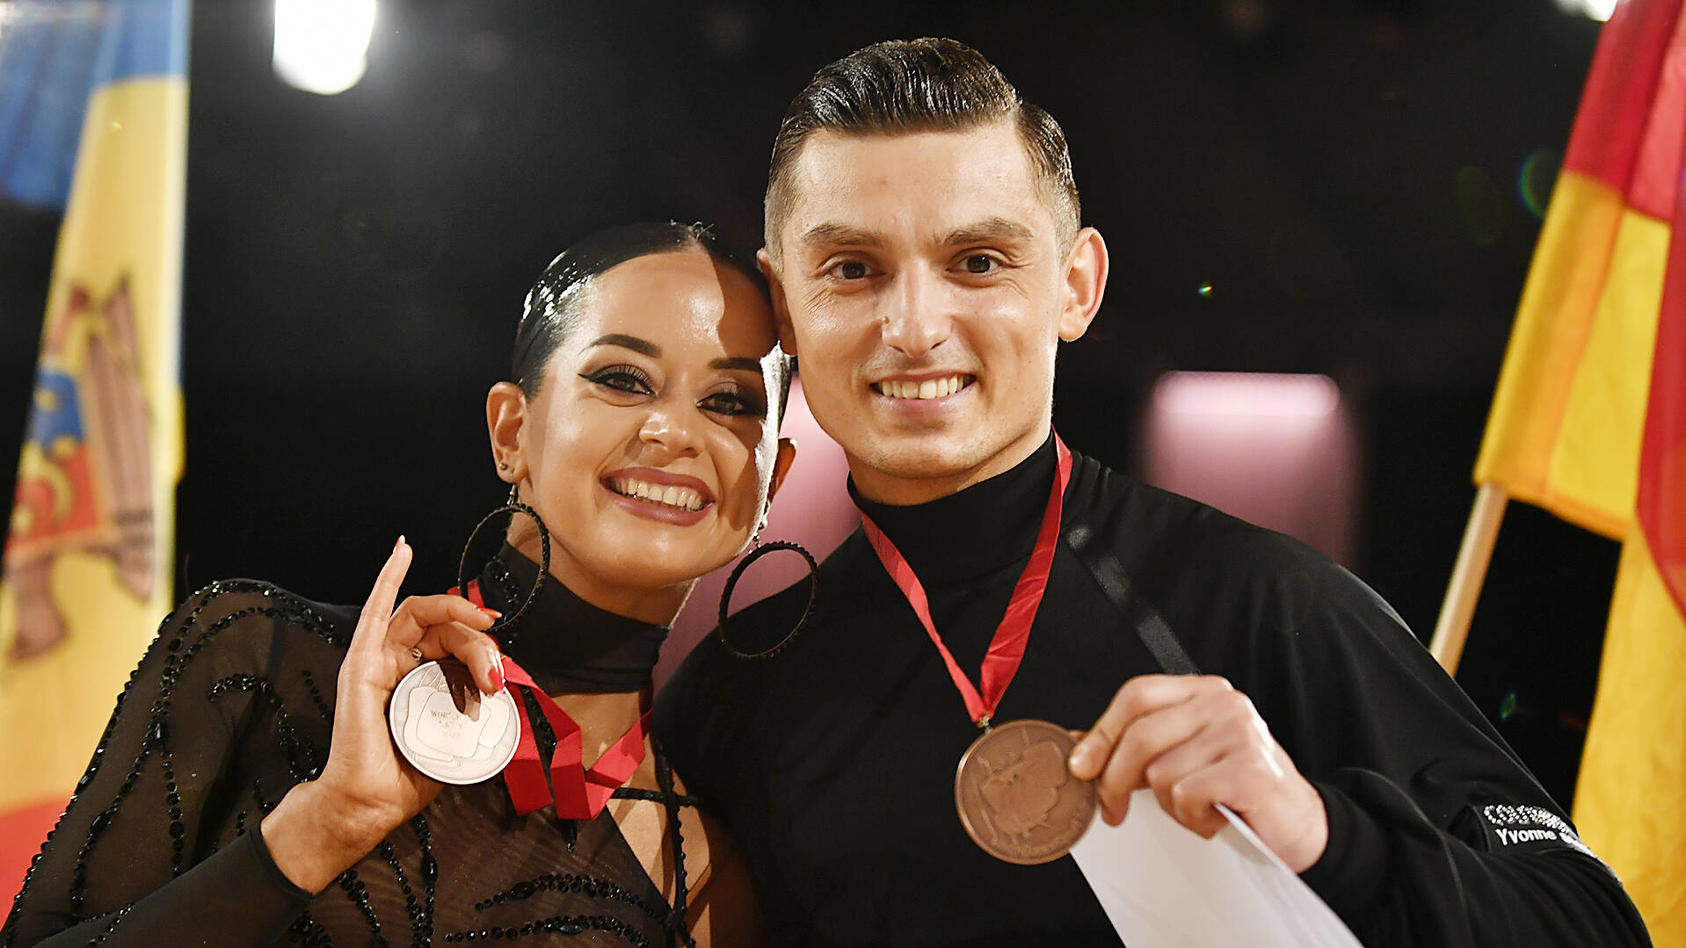 Malika und Zsolt sind happy! Sie gewinnen bei der Tanz-Weltmeisterschaft in Leipzig eine Medaille. 